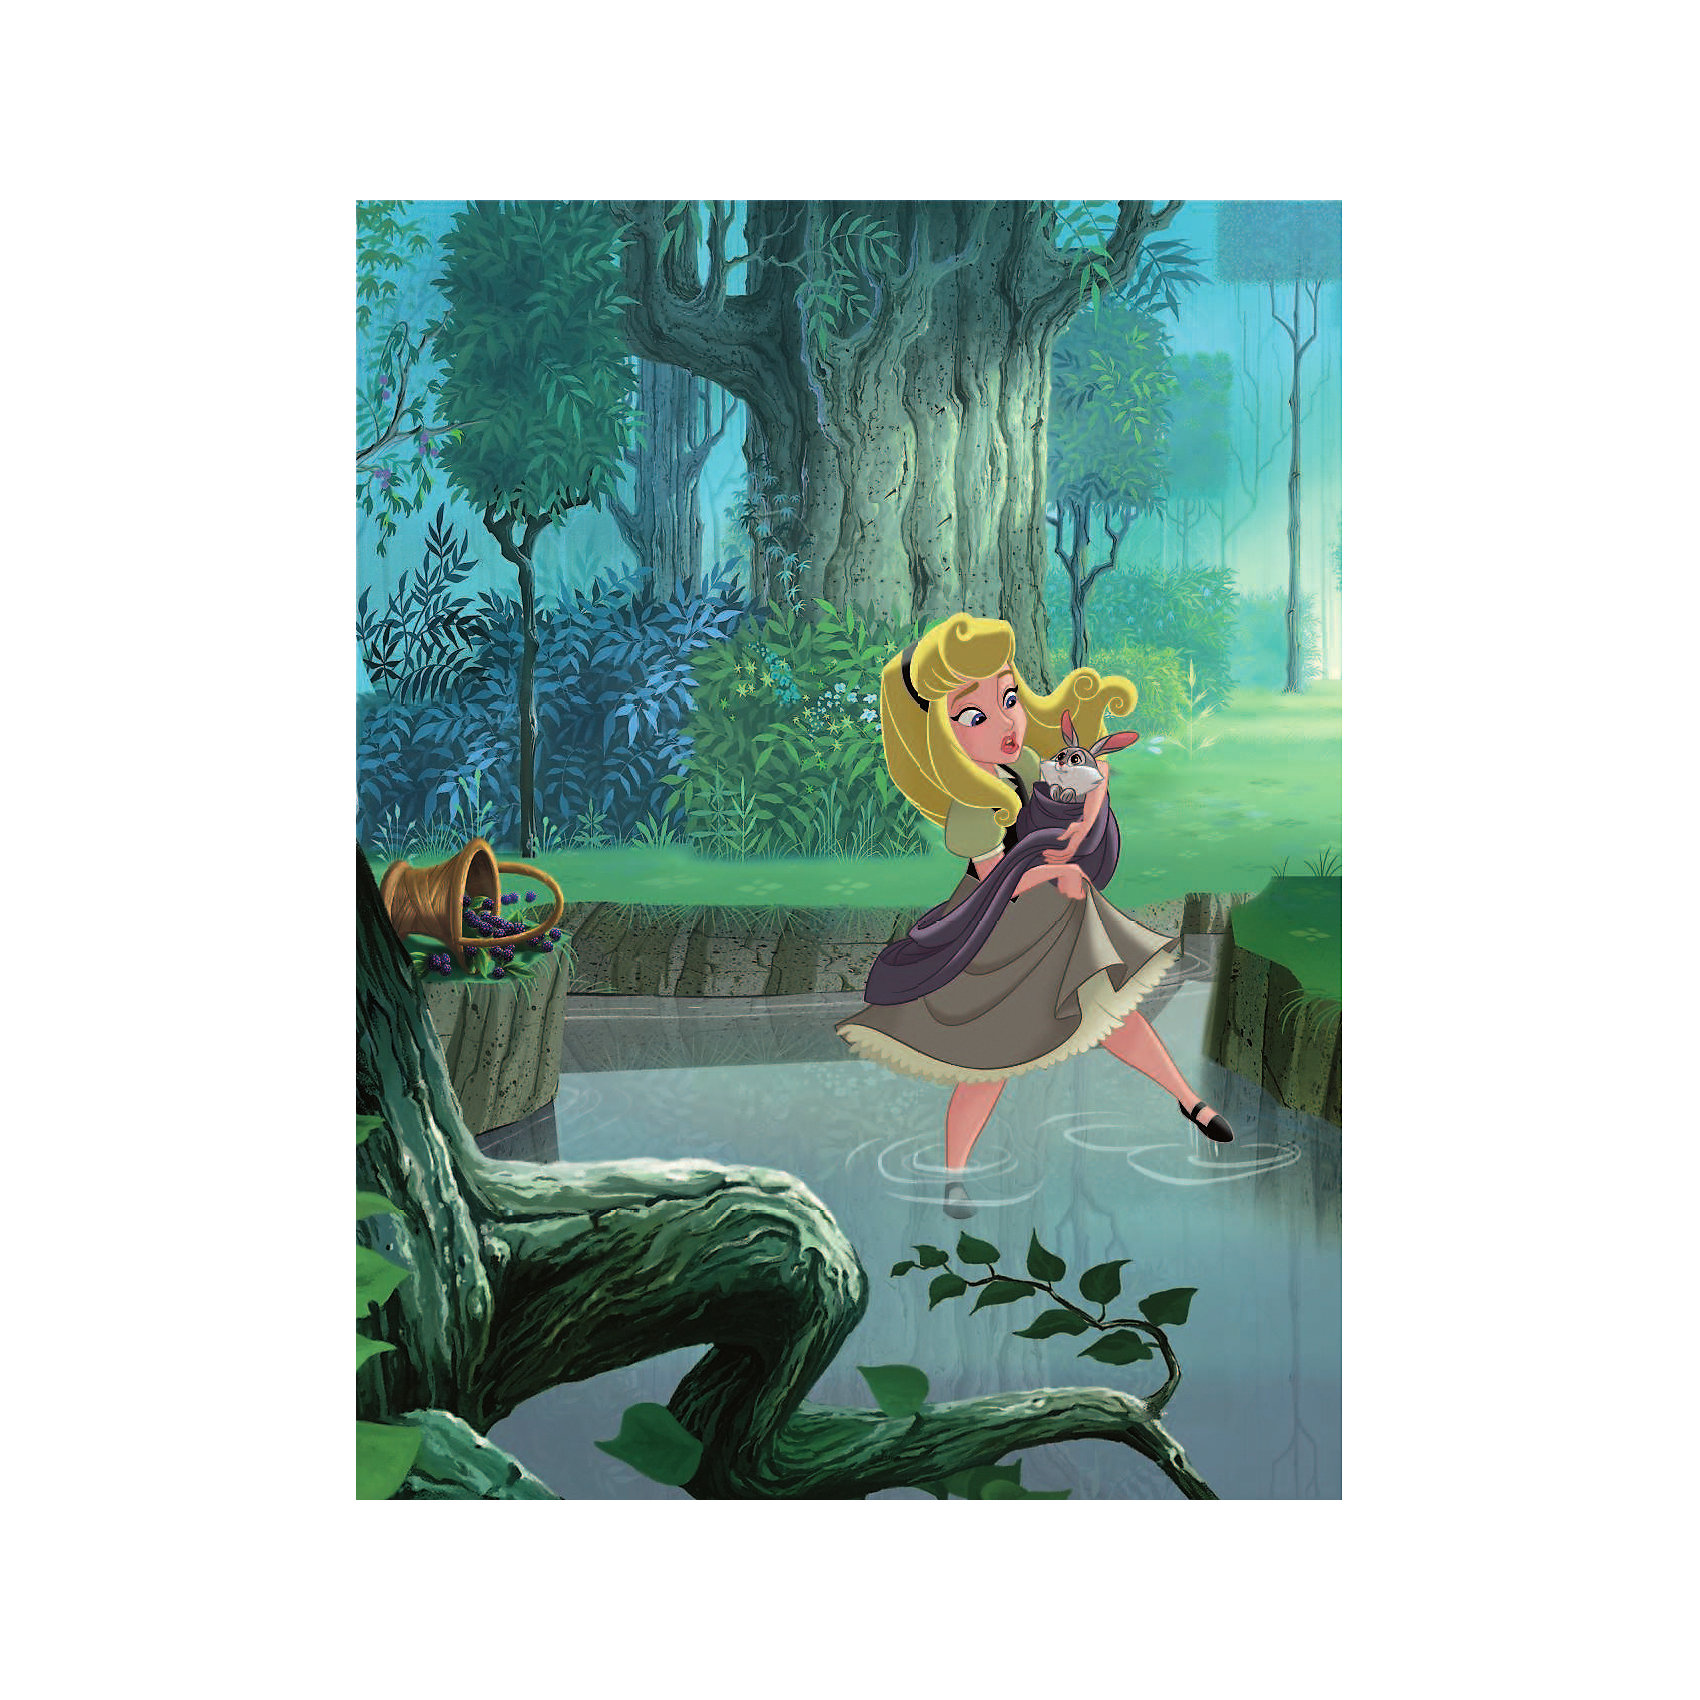 фото Сказка "Аврора выходит на сцену" Disney Принцесса, Рол Т. Издательство аст